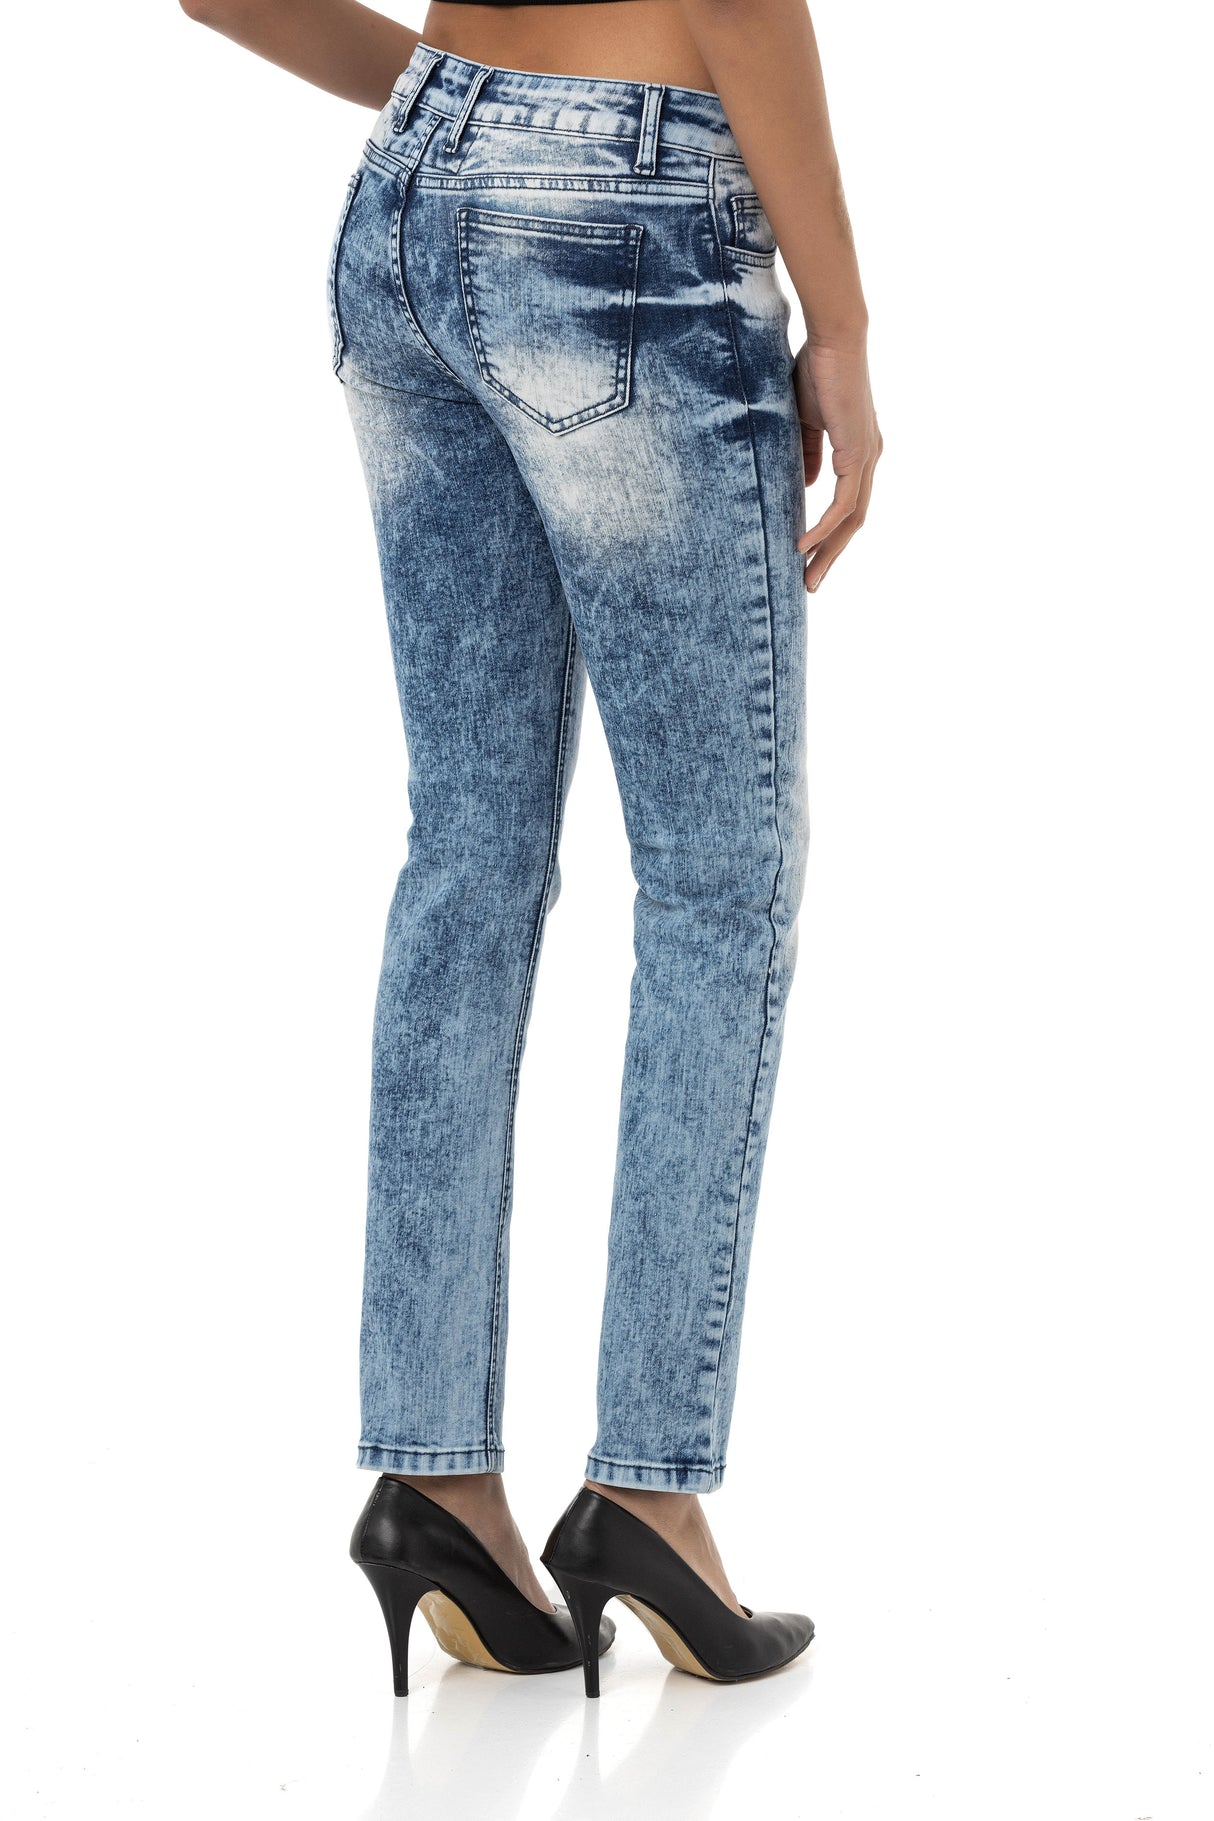 WD459 women Slim-Fit jeans in a modern look